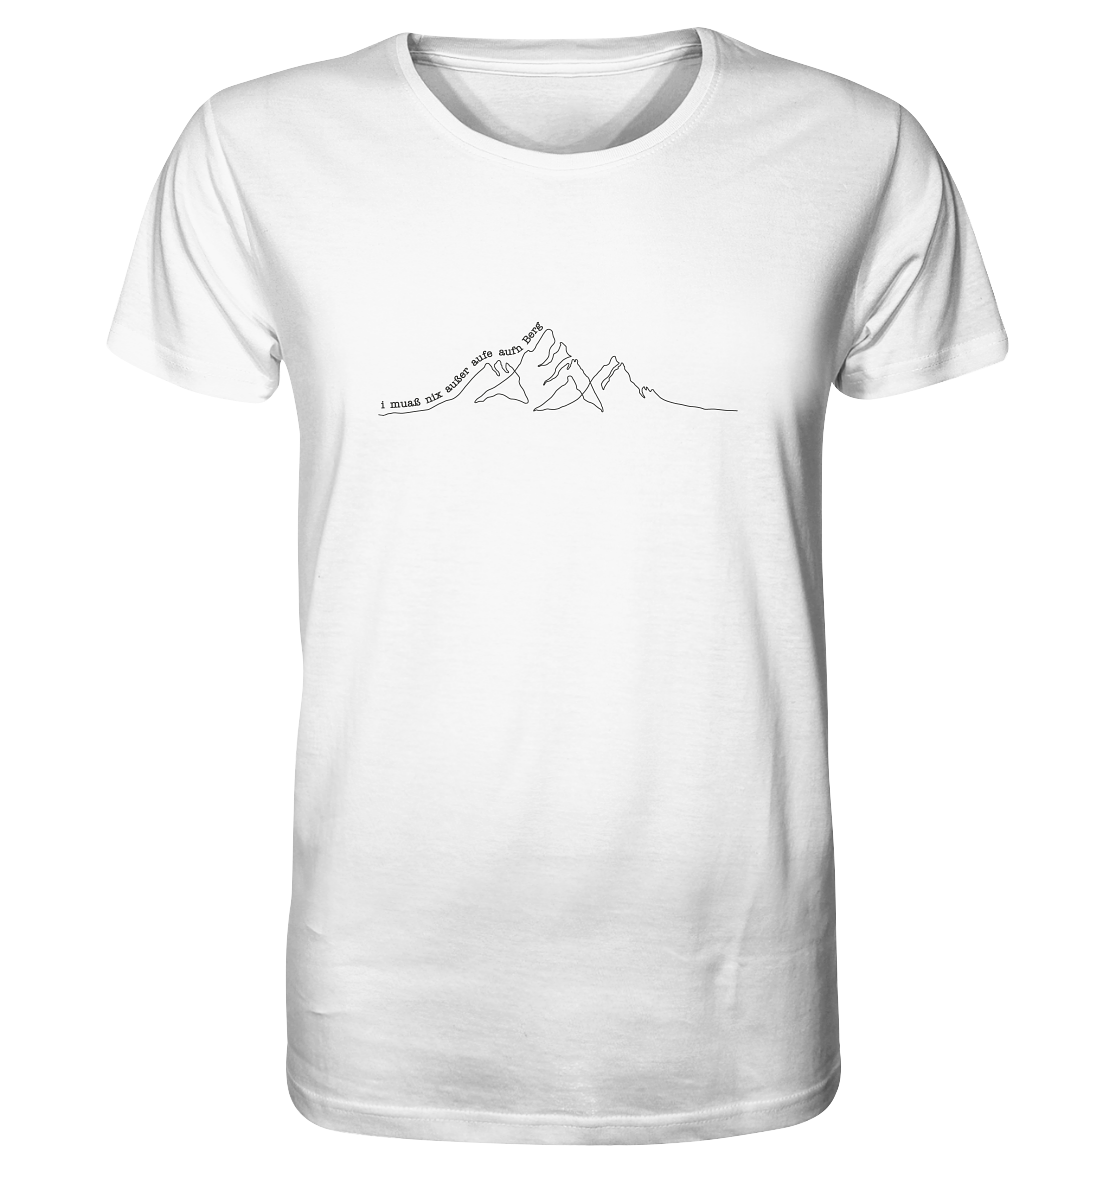 T-Shirt "Aufe aufn Berg"